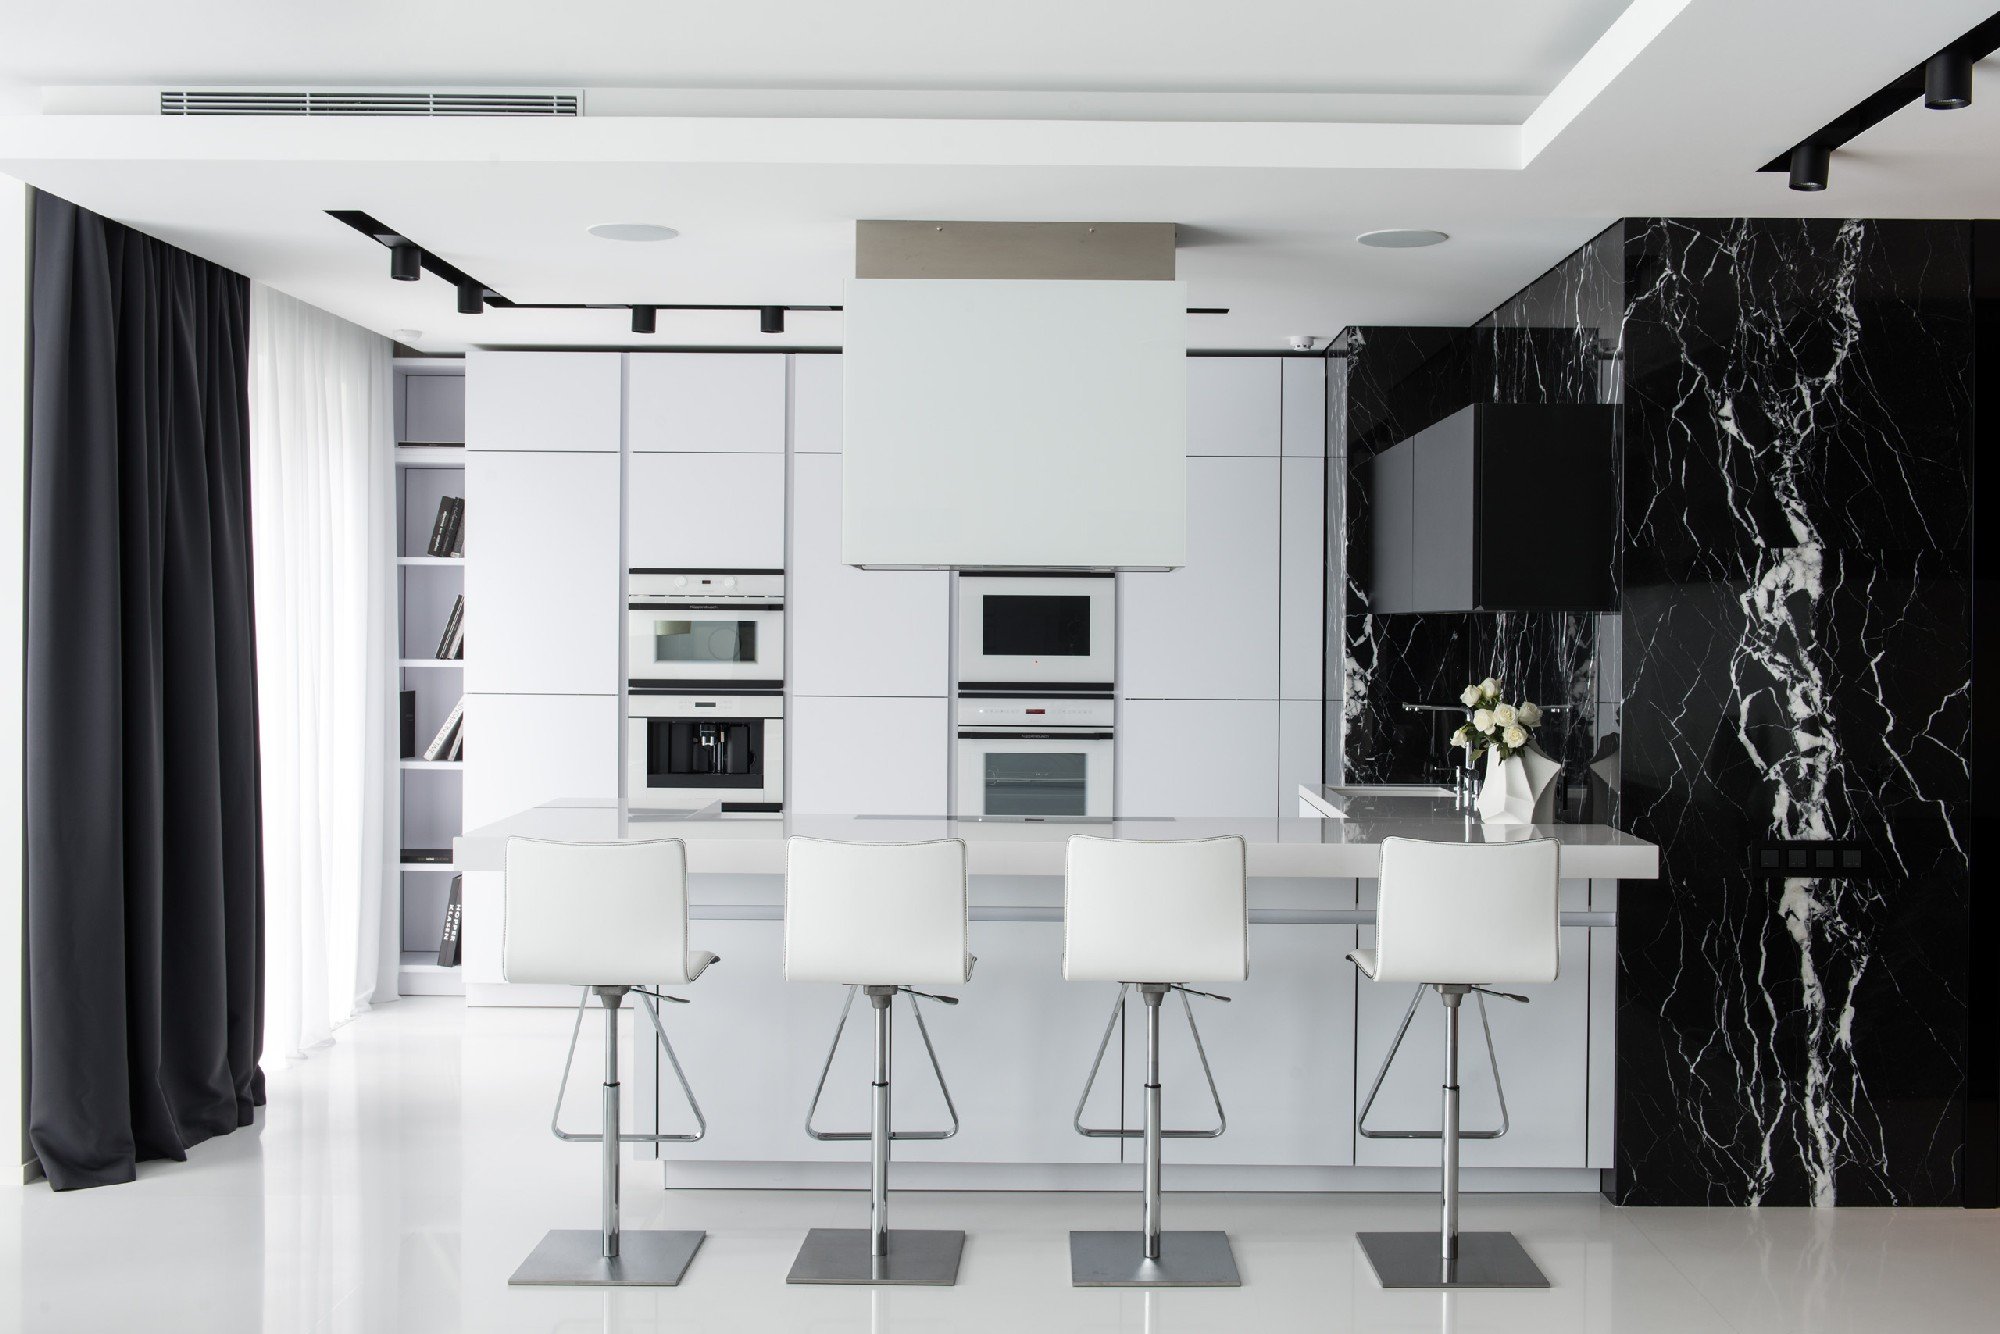 Черно-белая кухня - правила оформления, лучшие стилевые решения отделки и советы по выбору интерьера